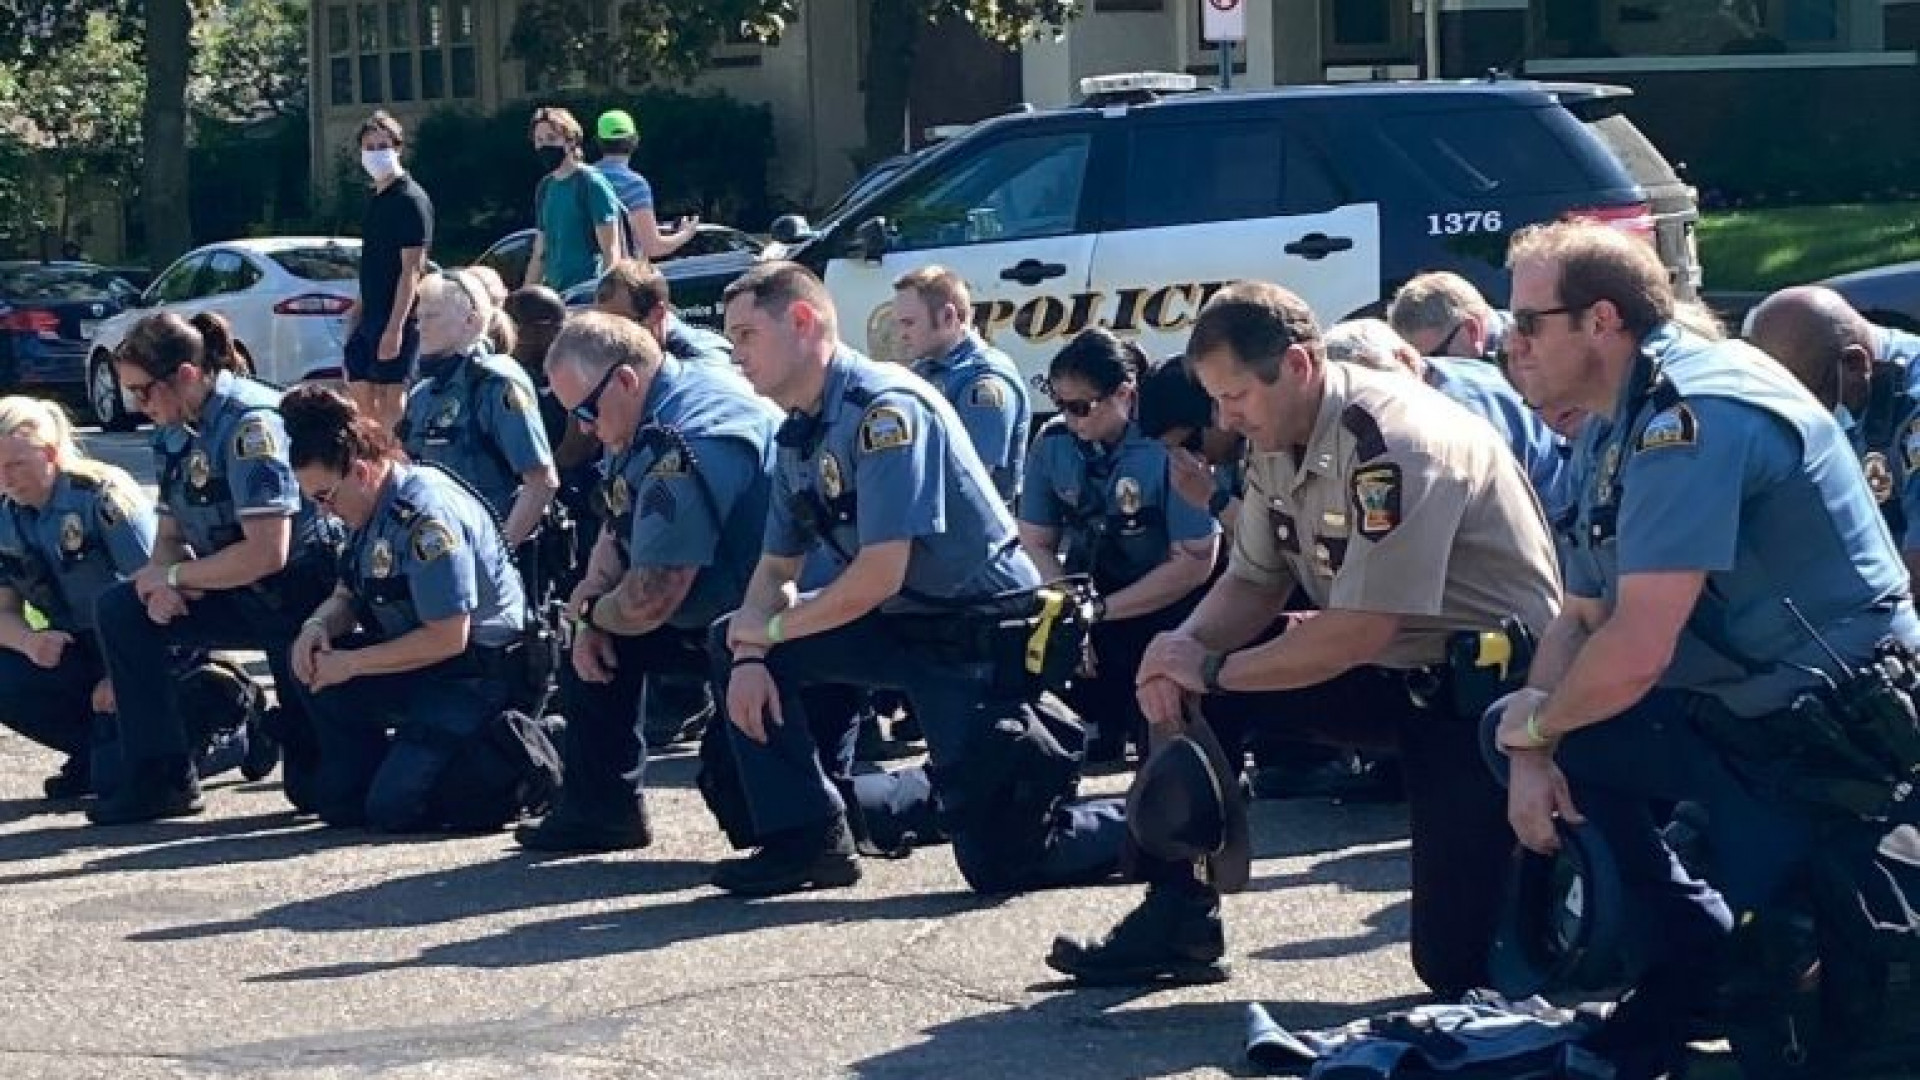 Почему американские полицейские встают на колено перед темнокожими  согражданами?: 04 июня 2020, 08:49 - новости на Tengrinews.kz